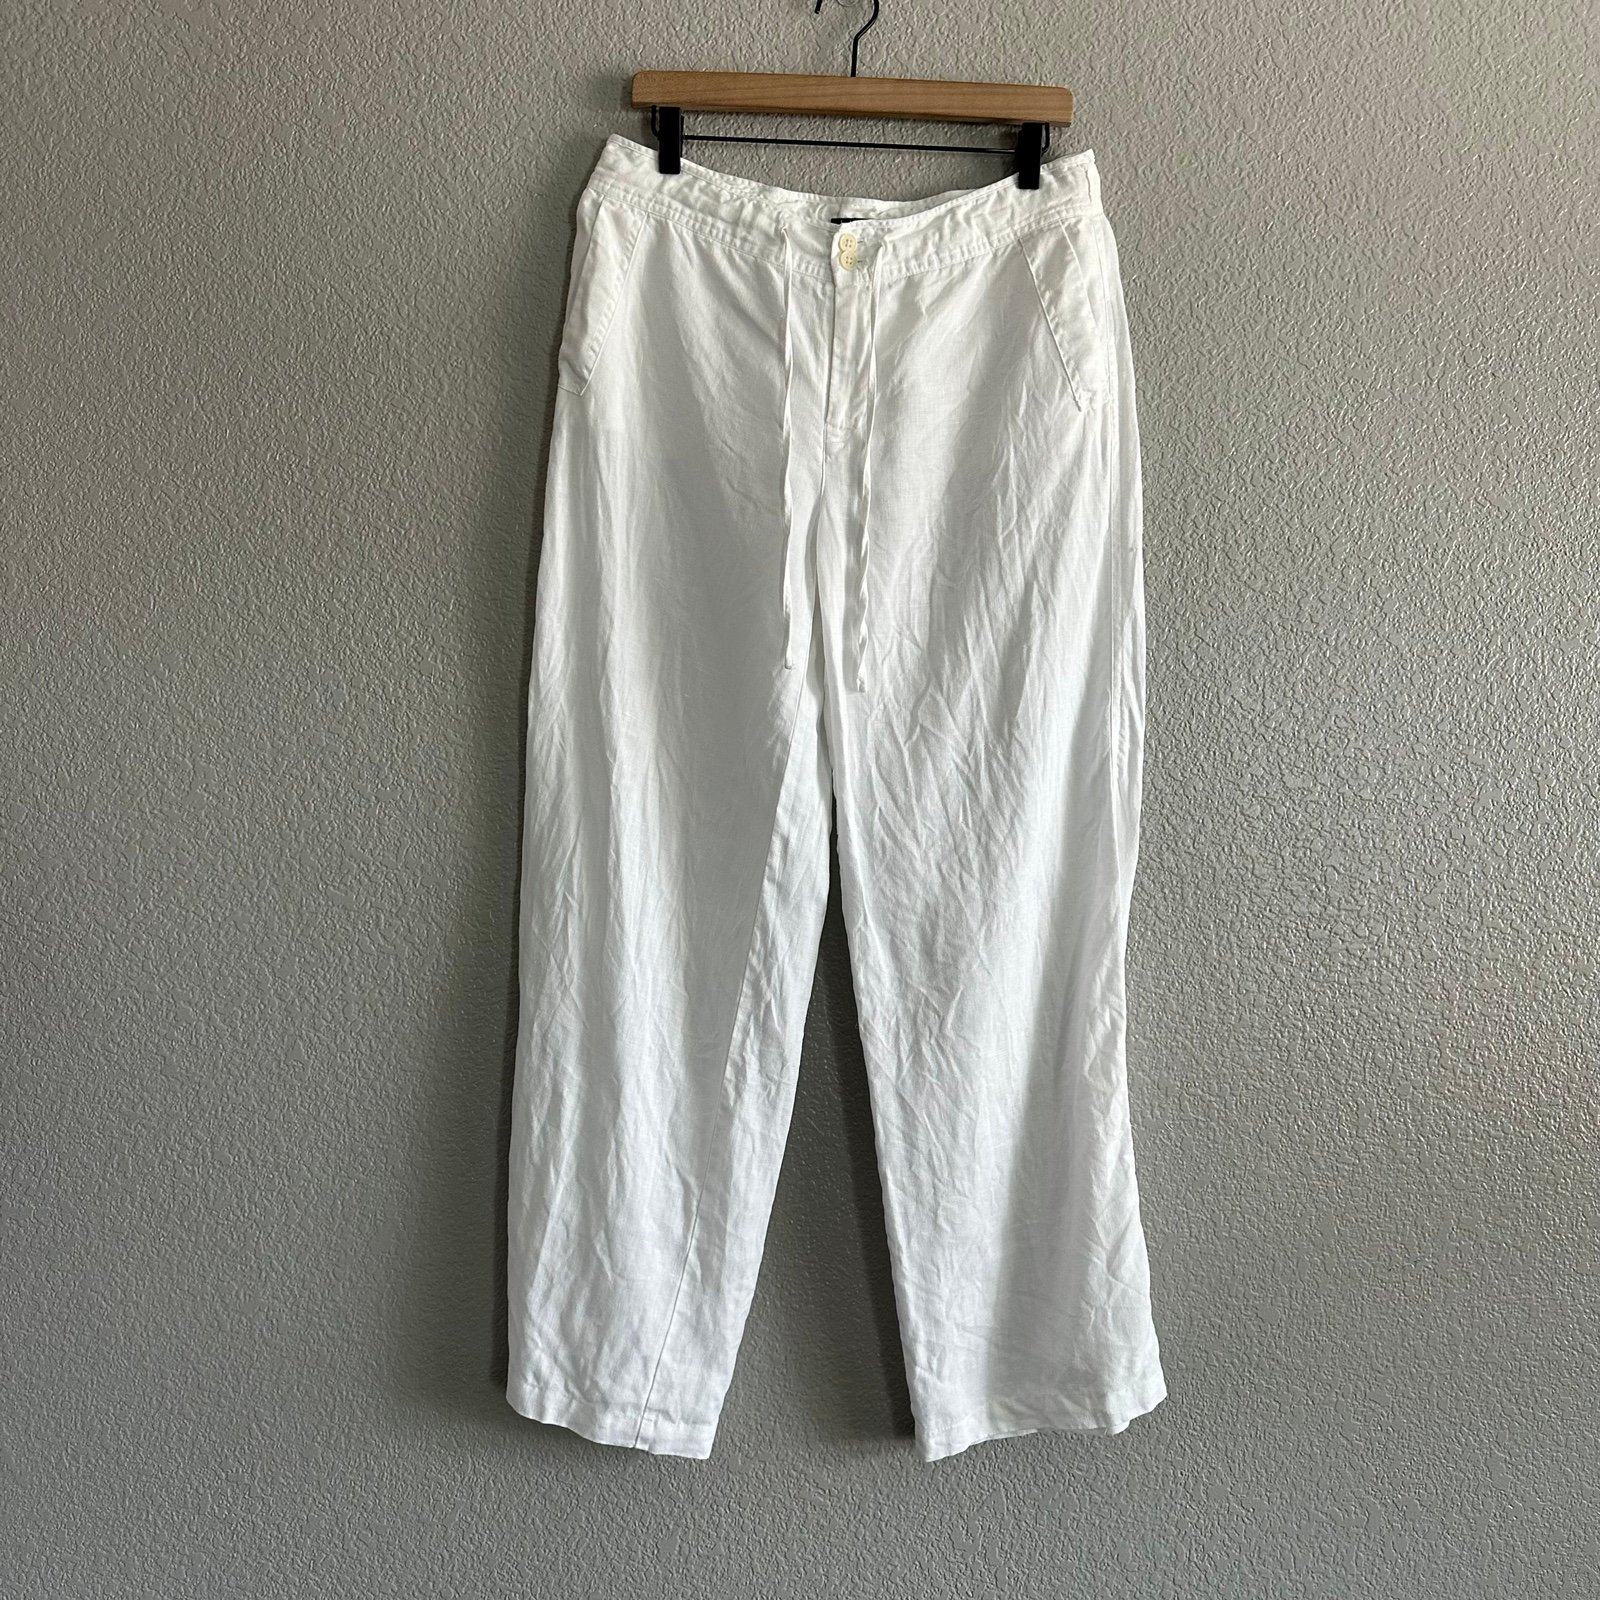 reasonable price Lauren Ralph Lauren Linen Pants Sz 8 White Casual Beach Vacation Lightweight joi5Ozwe7 Store Online